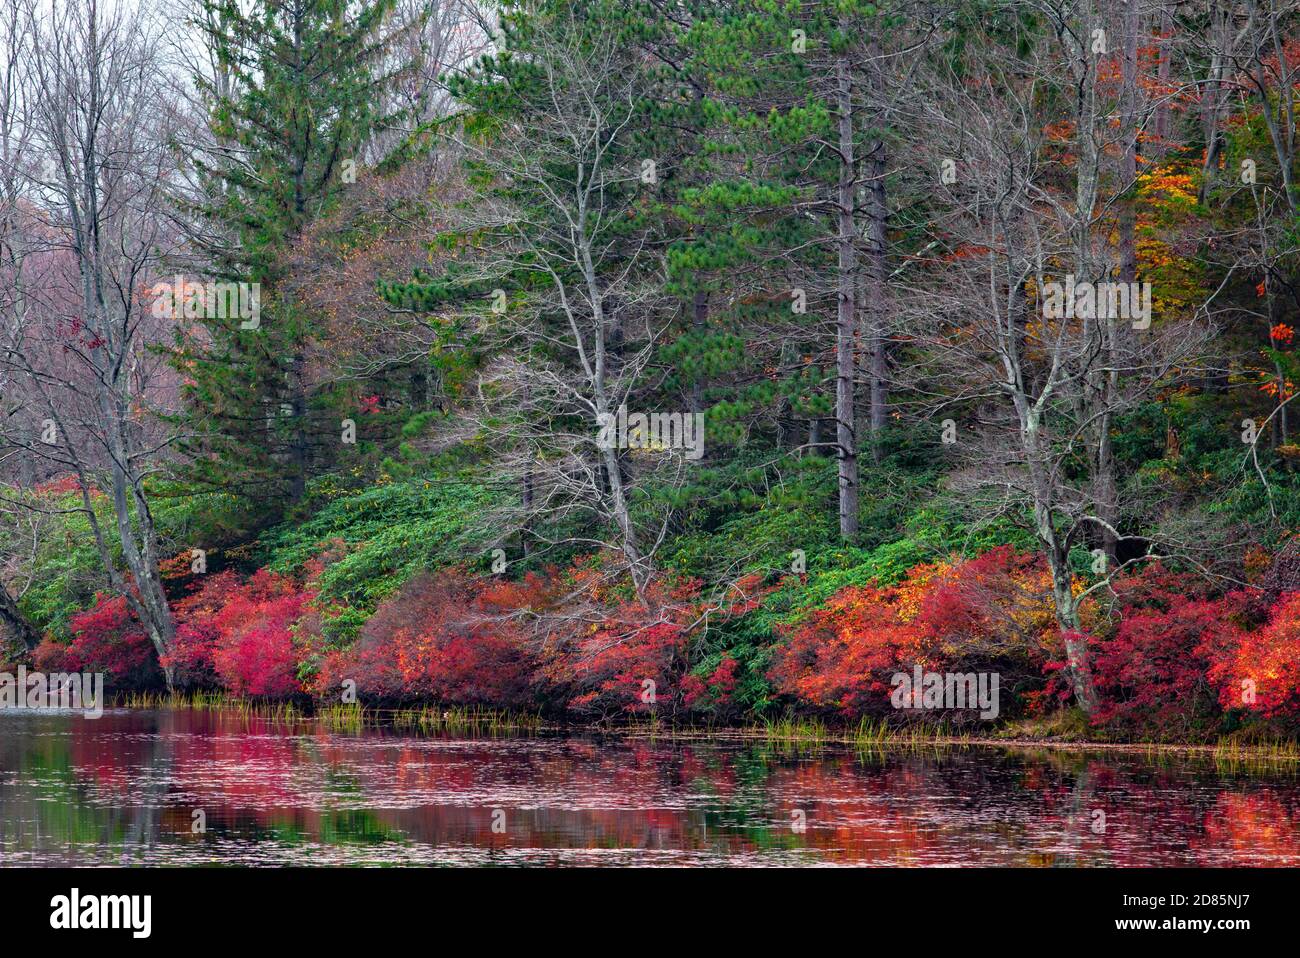 La vegetación de finales de otoño crece a lo largo de la costa del lago Promised Land en el Parque Estatal Promised Land en las montañas Pocono de Pensilvania. Foto de stock